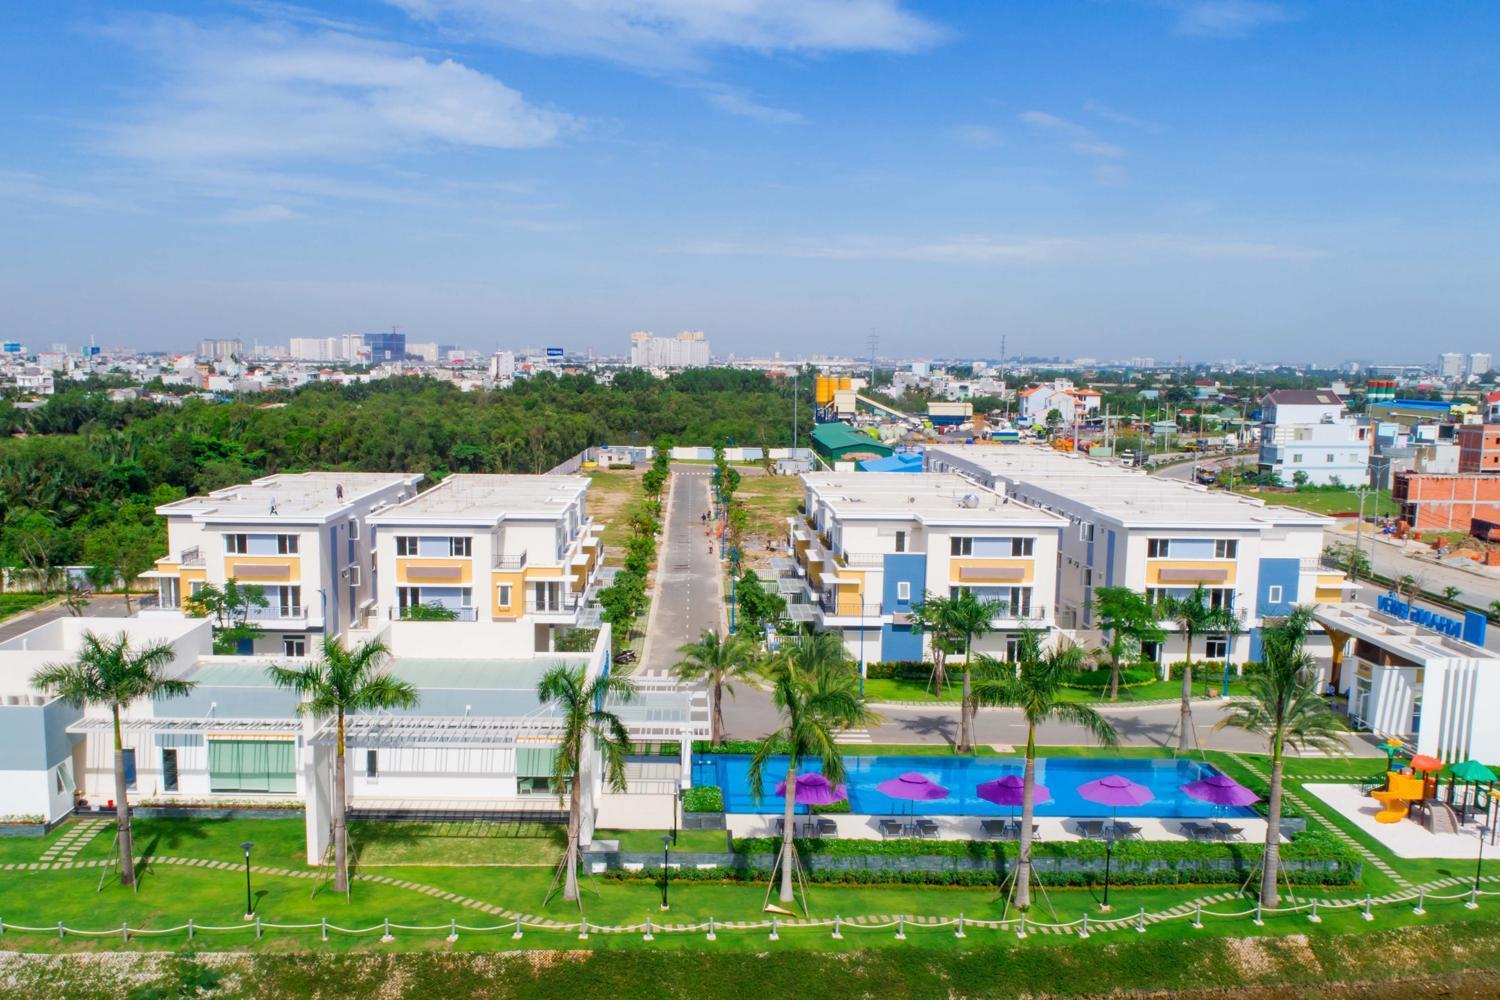 Rosita Garden – chốn riêng xanh mát giữa Sài Gòn sôi động!